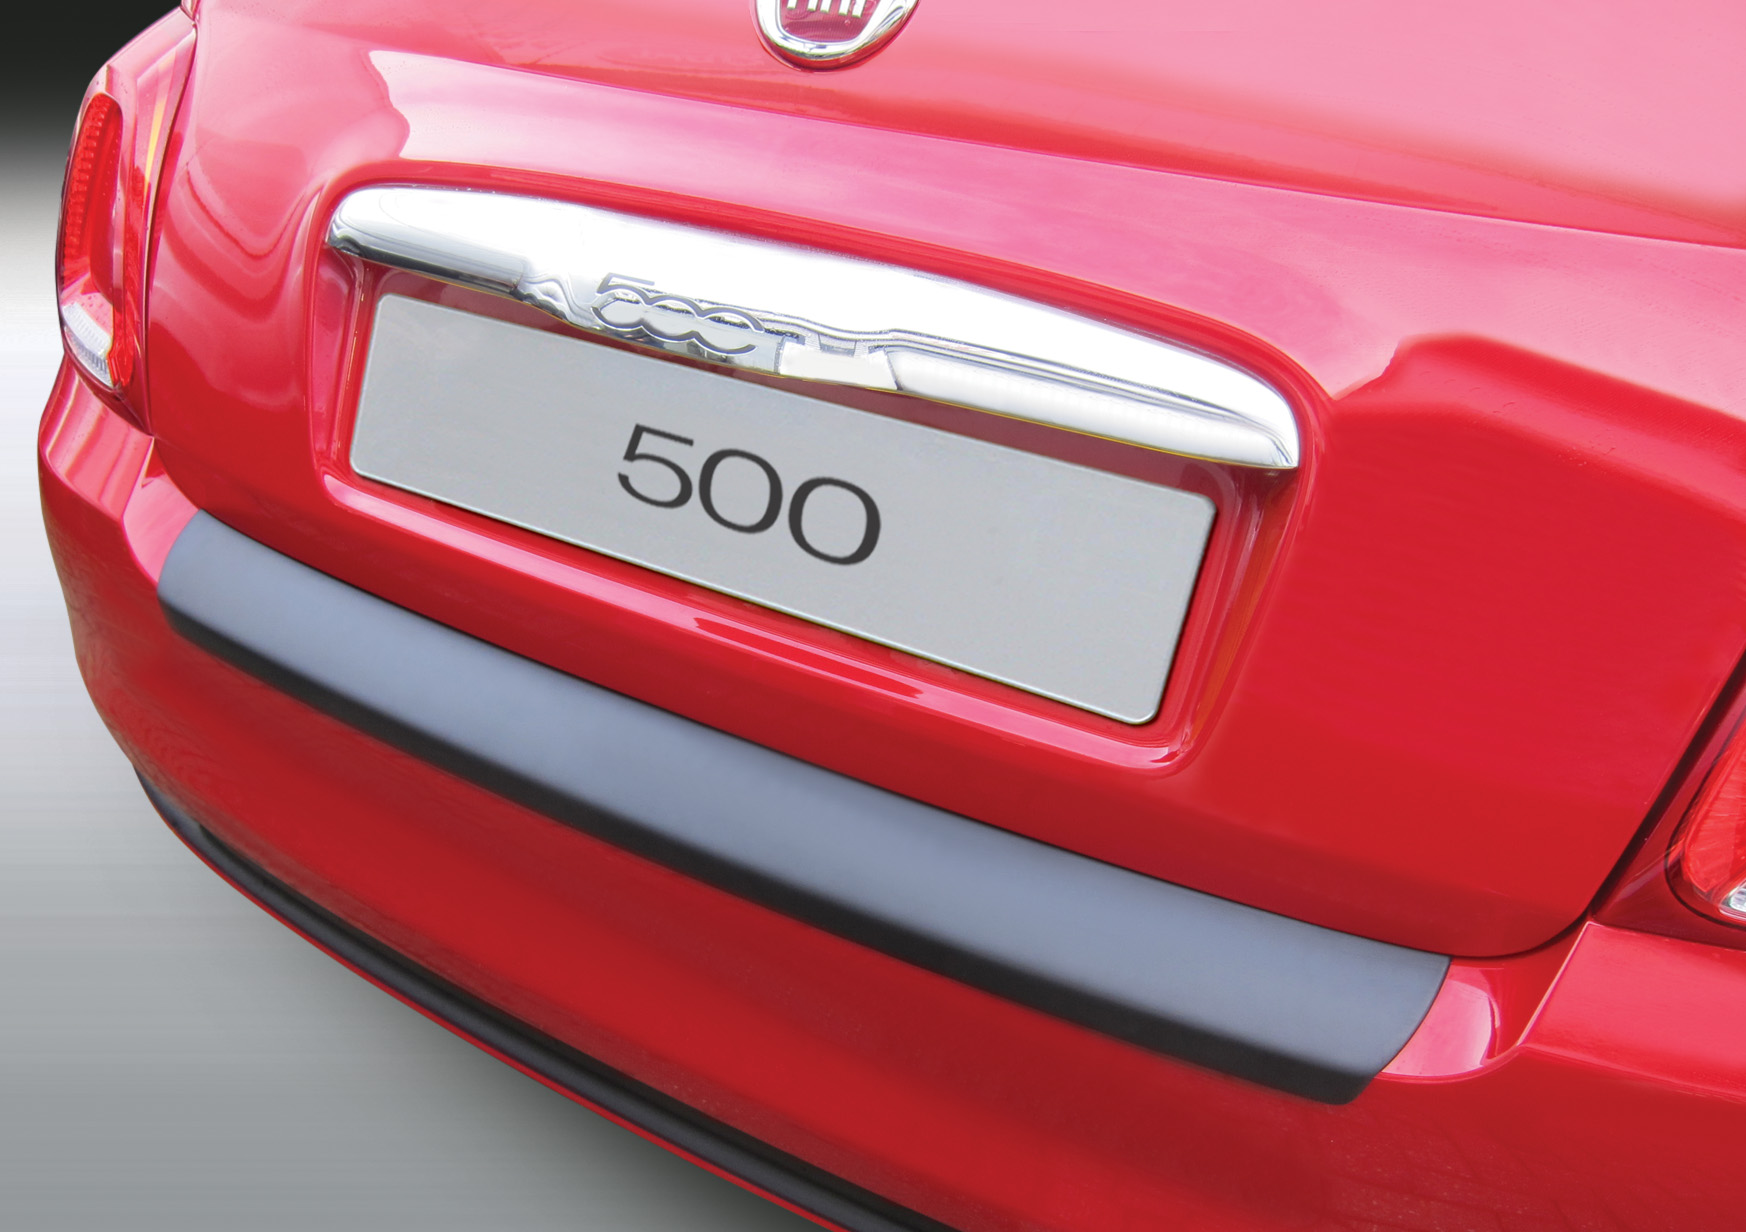 Ladekantenschutz für FIAT 500 - Schutz für die Ladekante Ihres Fahrzeuges